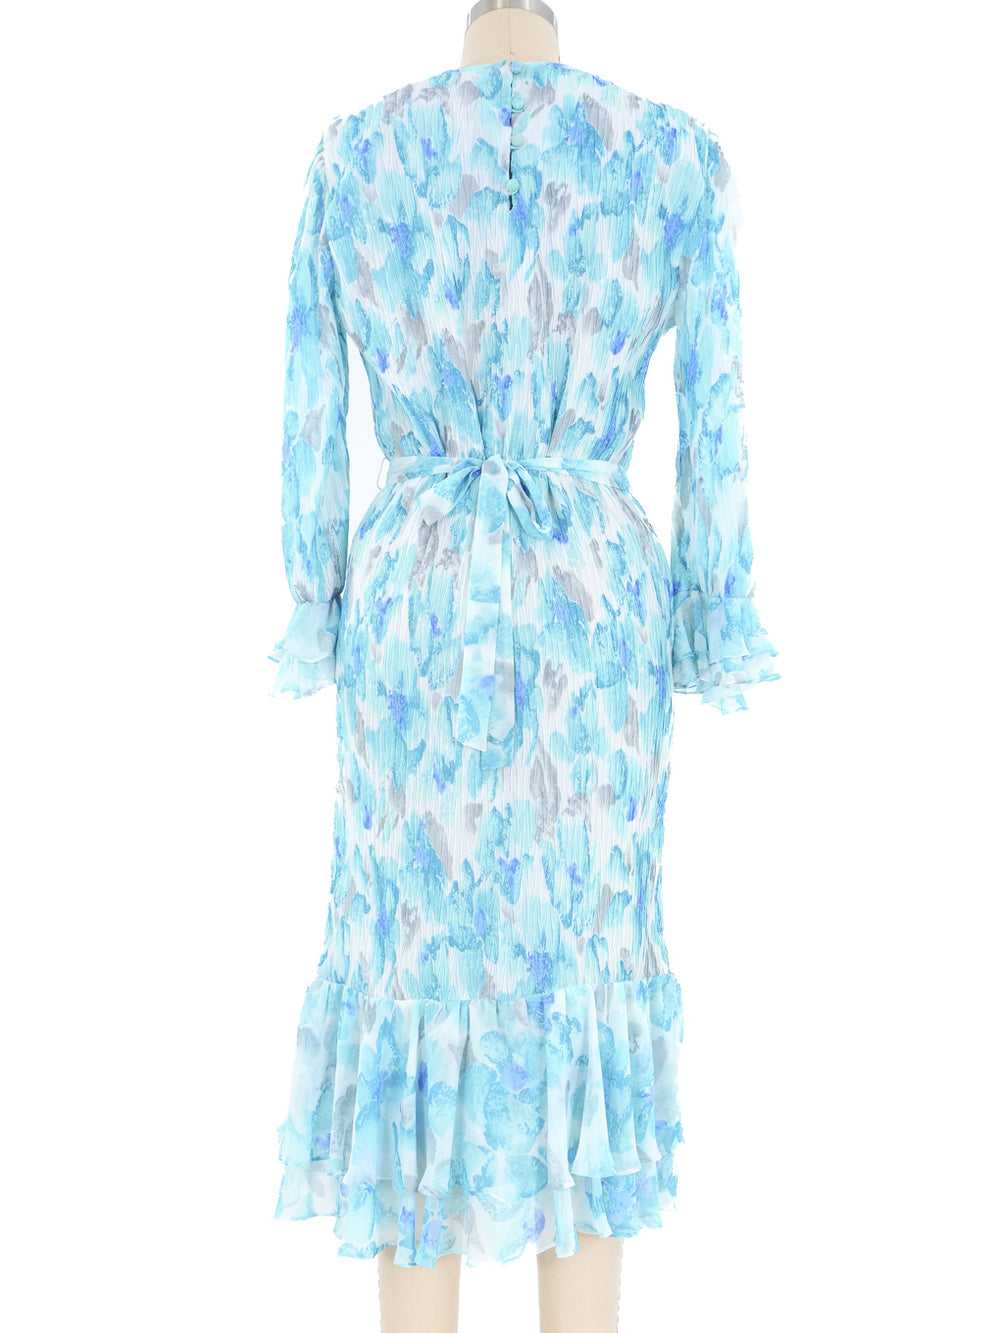 Turquoise Pleated Ruffle Dress - image 4